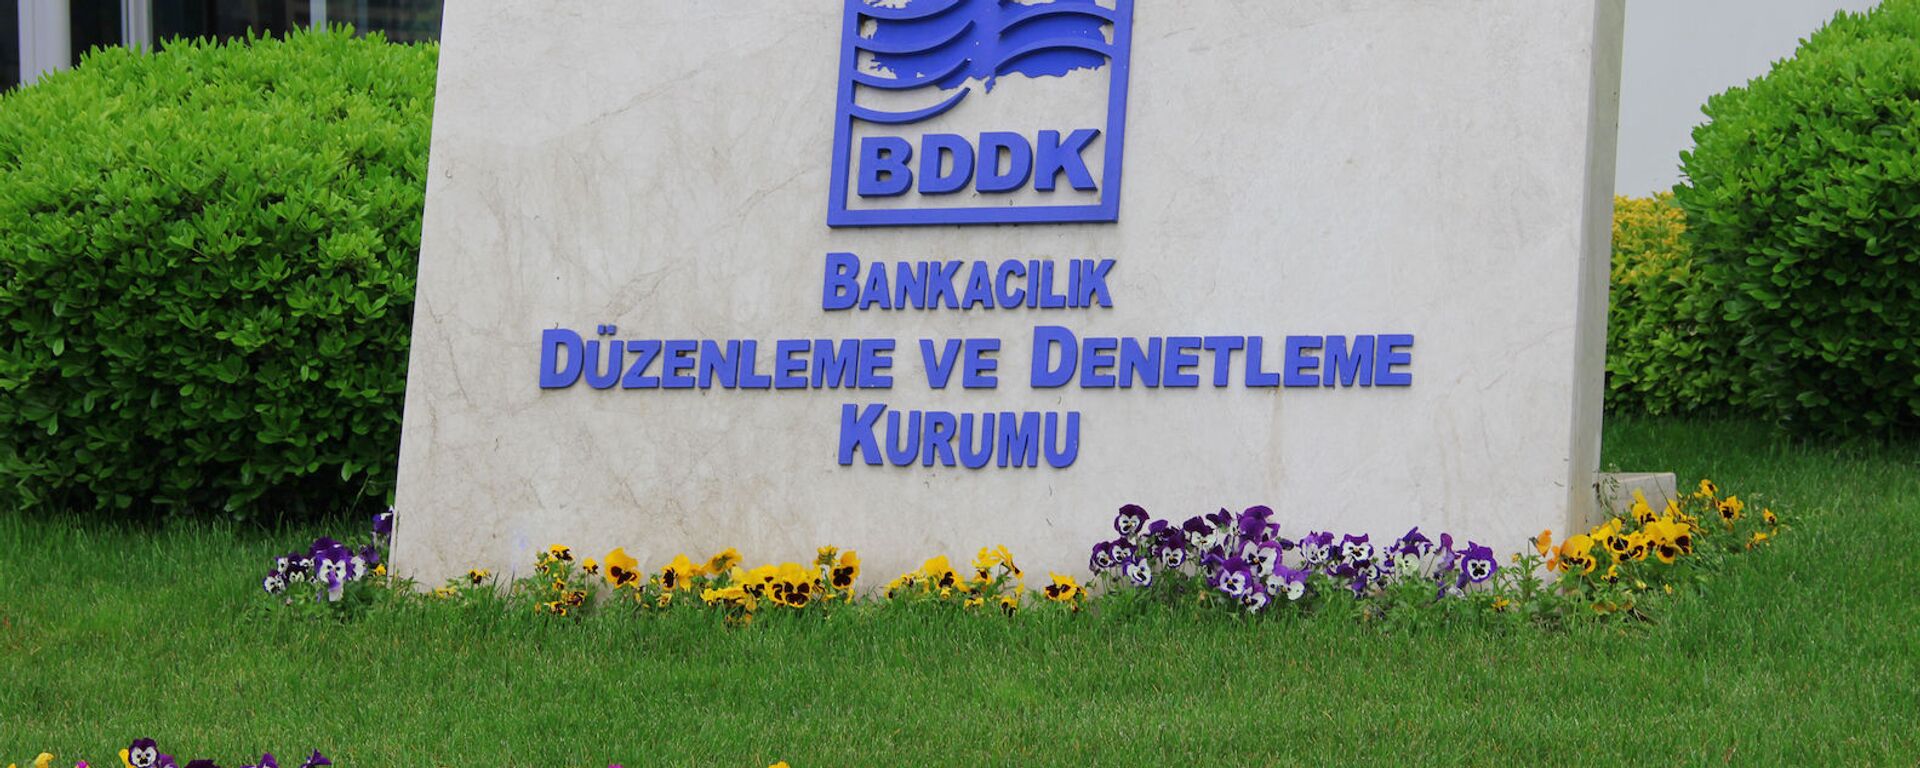 Bankacılık Düzenleme ve Denetleme Kurumu, BDDK - Sputnik Türkiye, 1920, 10.07.2021